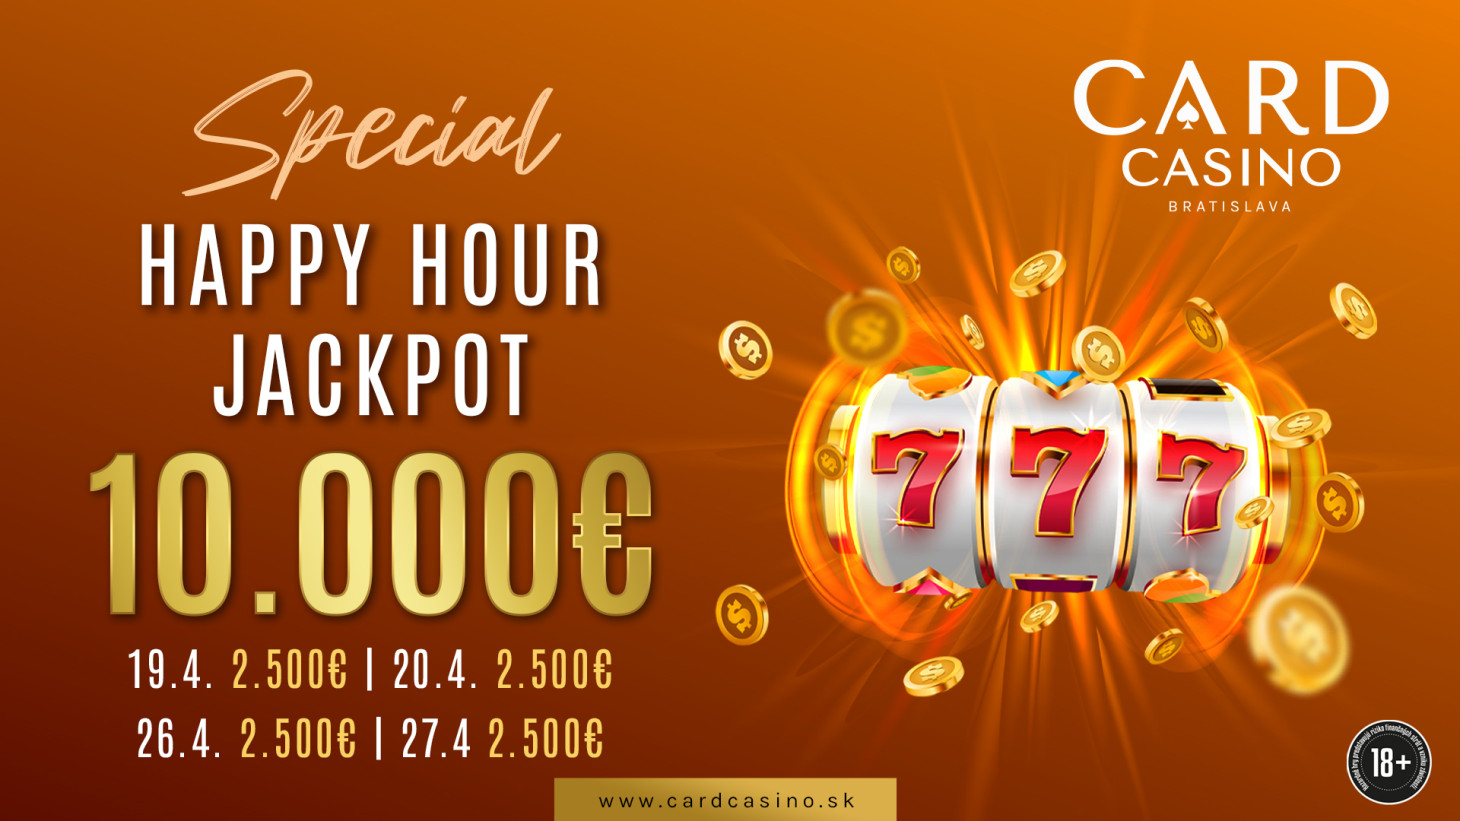 Dni nabité peniazmi. Happy Hour Jackpot ponúka výhry 10.000€!